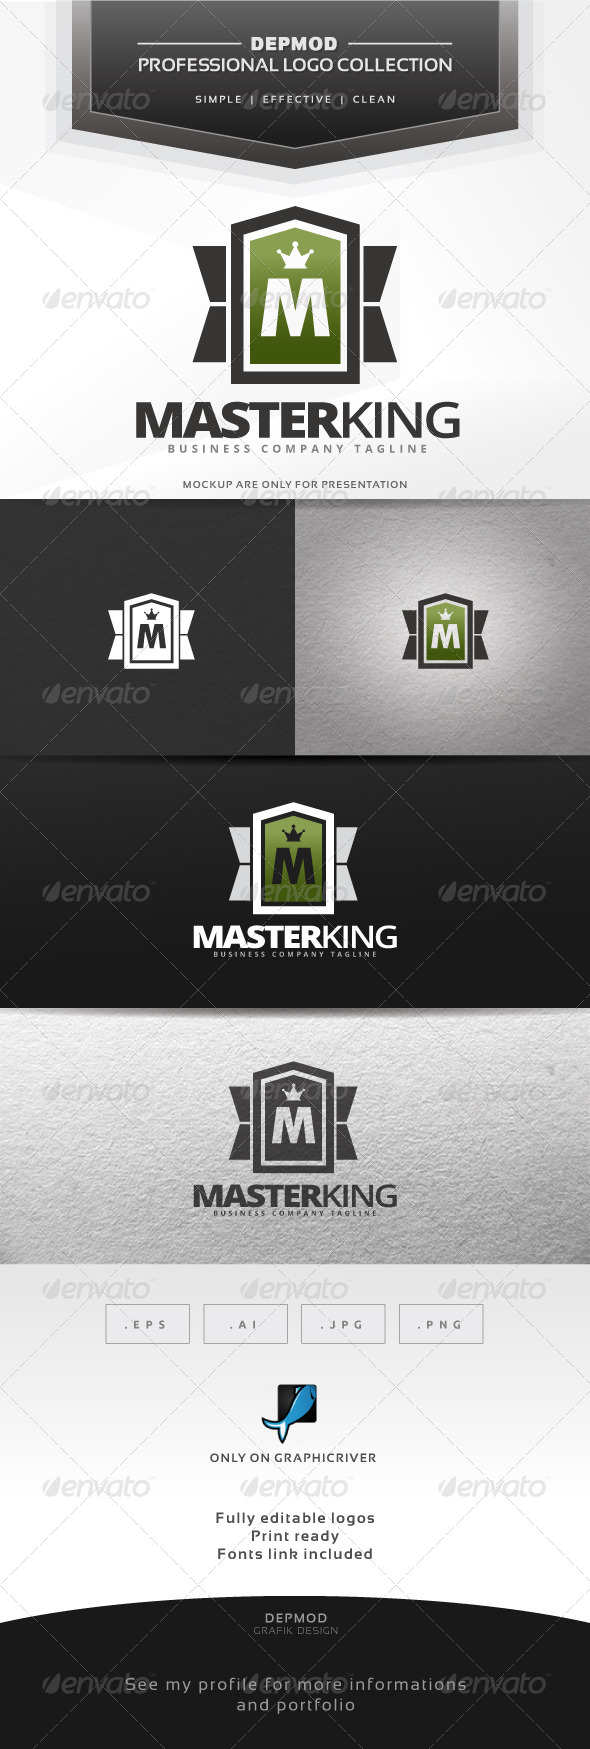 Master King Logo